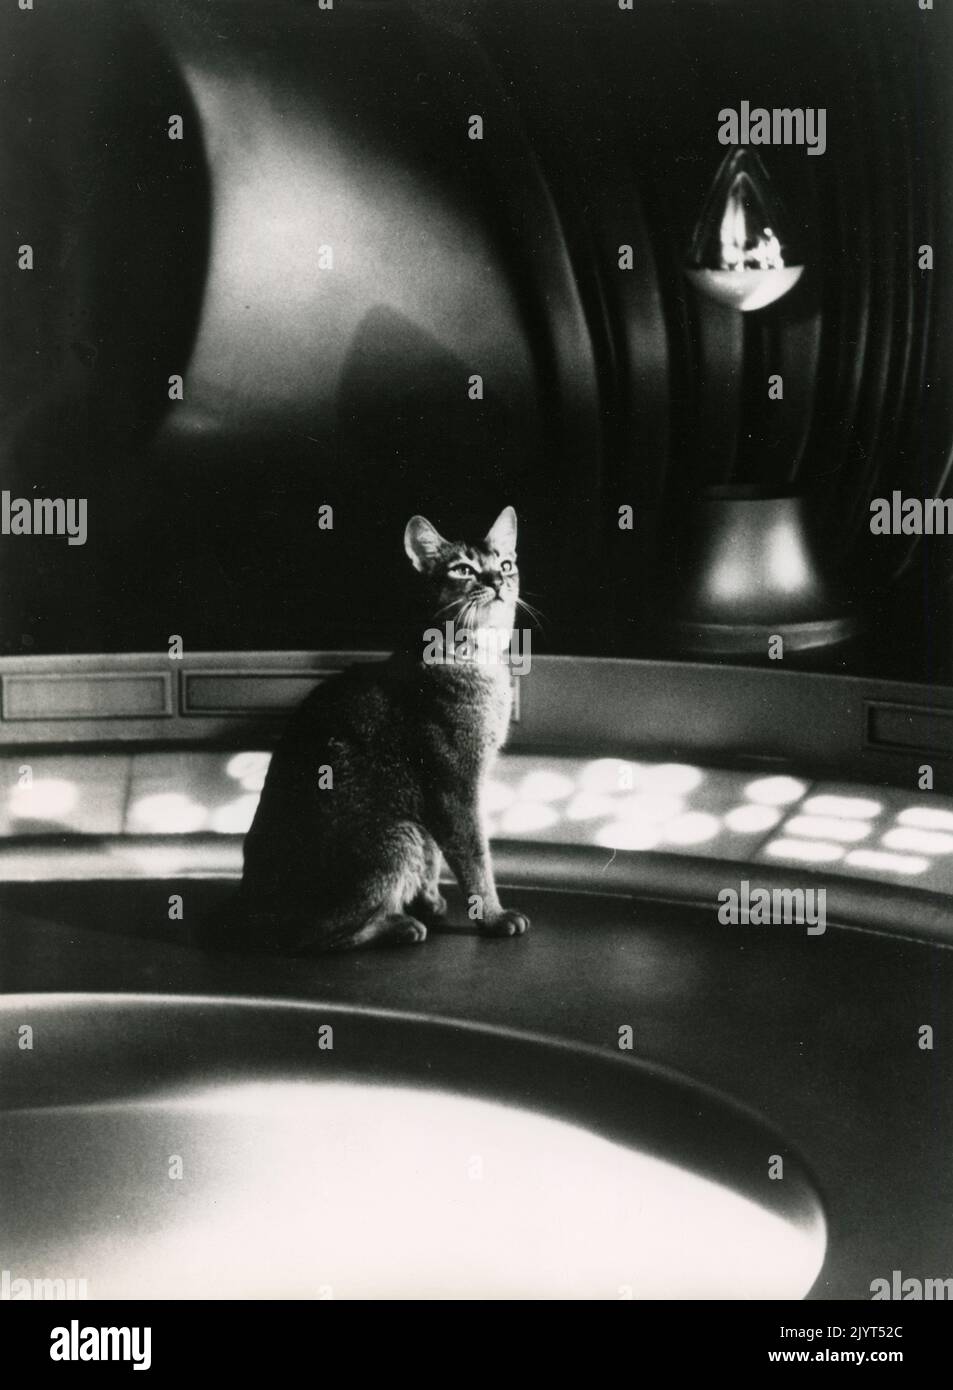 El gato en la película El gato del espacio exterior, EE.UU. 1978 Foto de stock